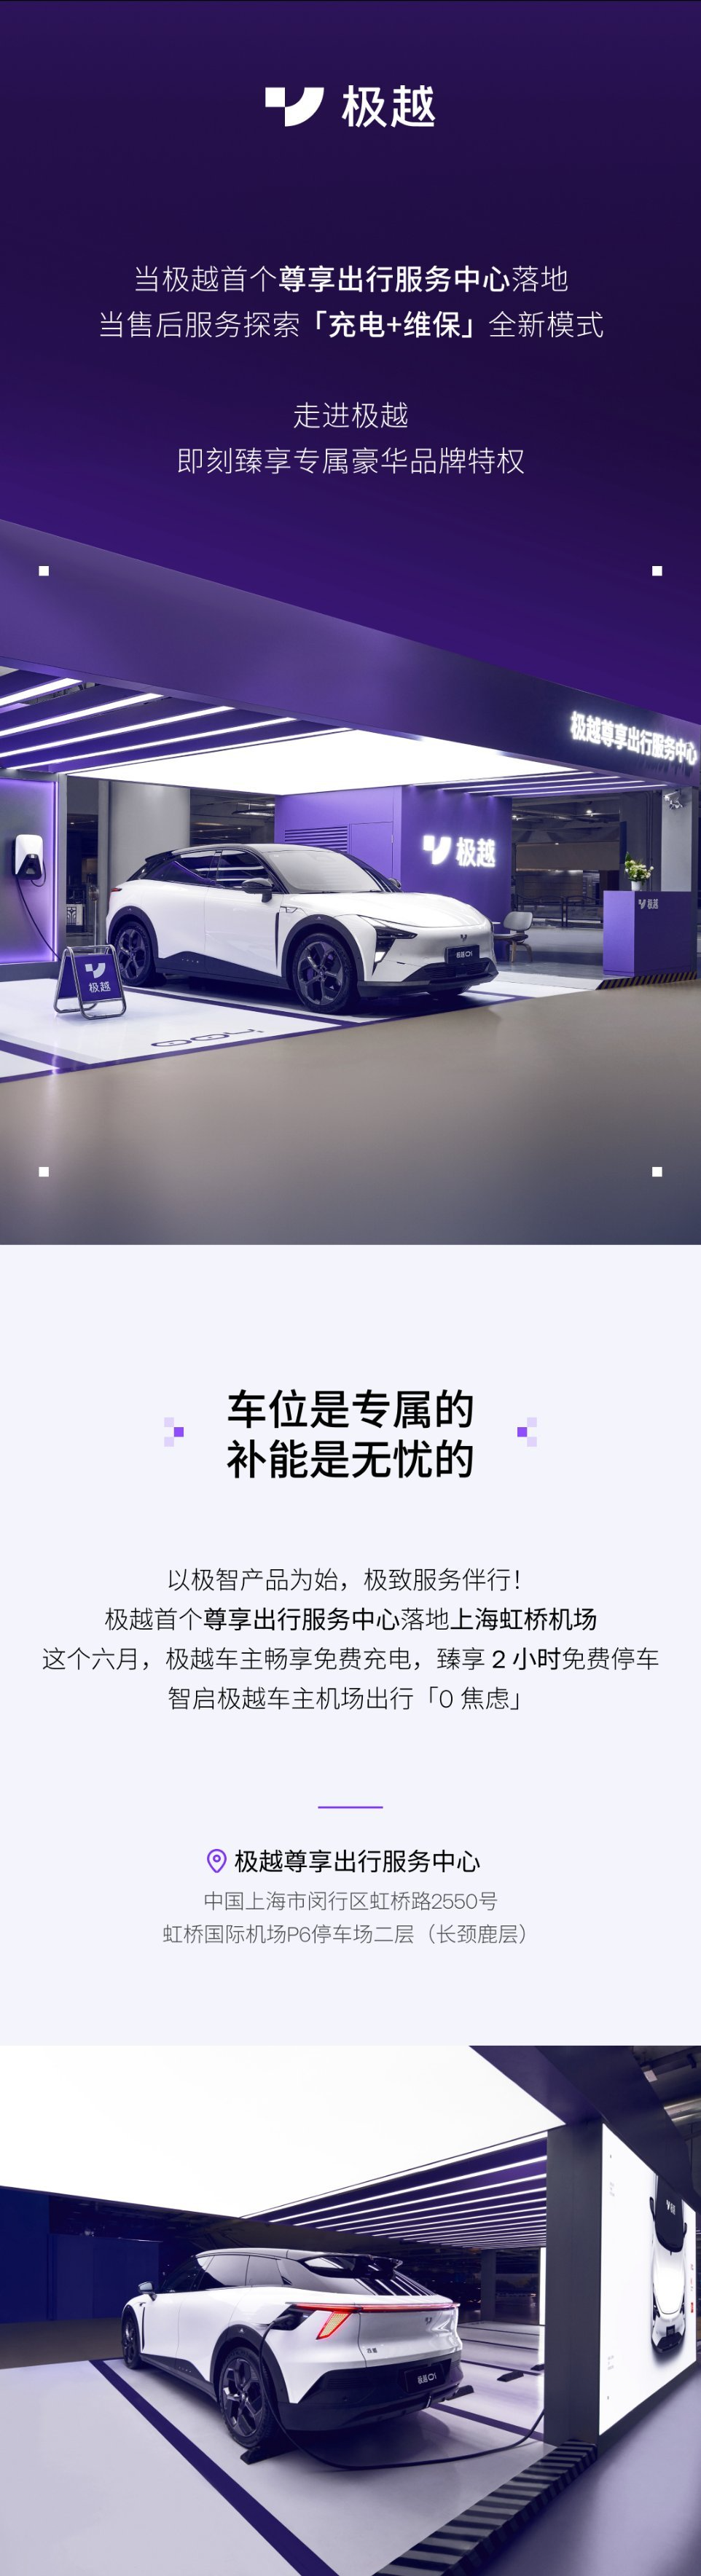 极越汽车首个尊享出行服务中心落地上海虹桥机场	，提供“充电 + 维保”新模式售后  第2张